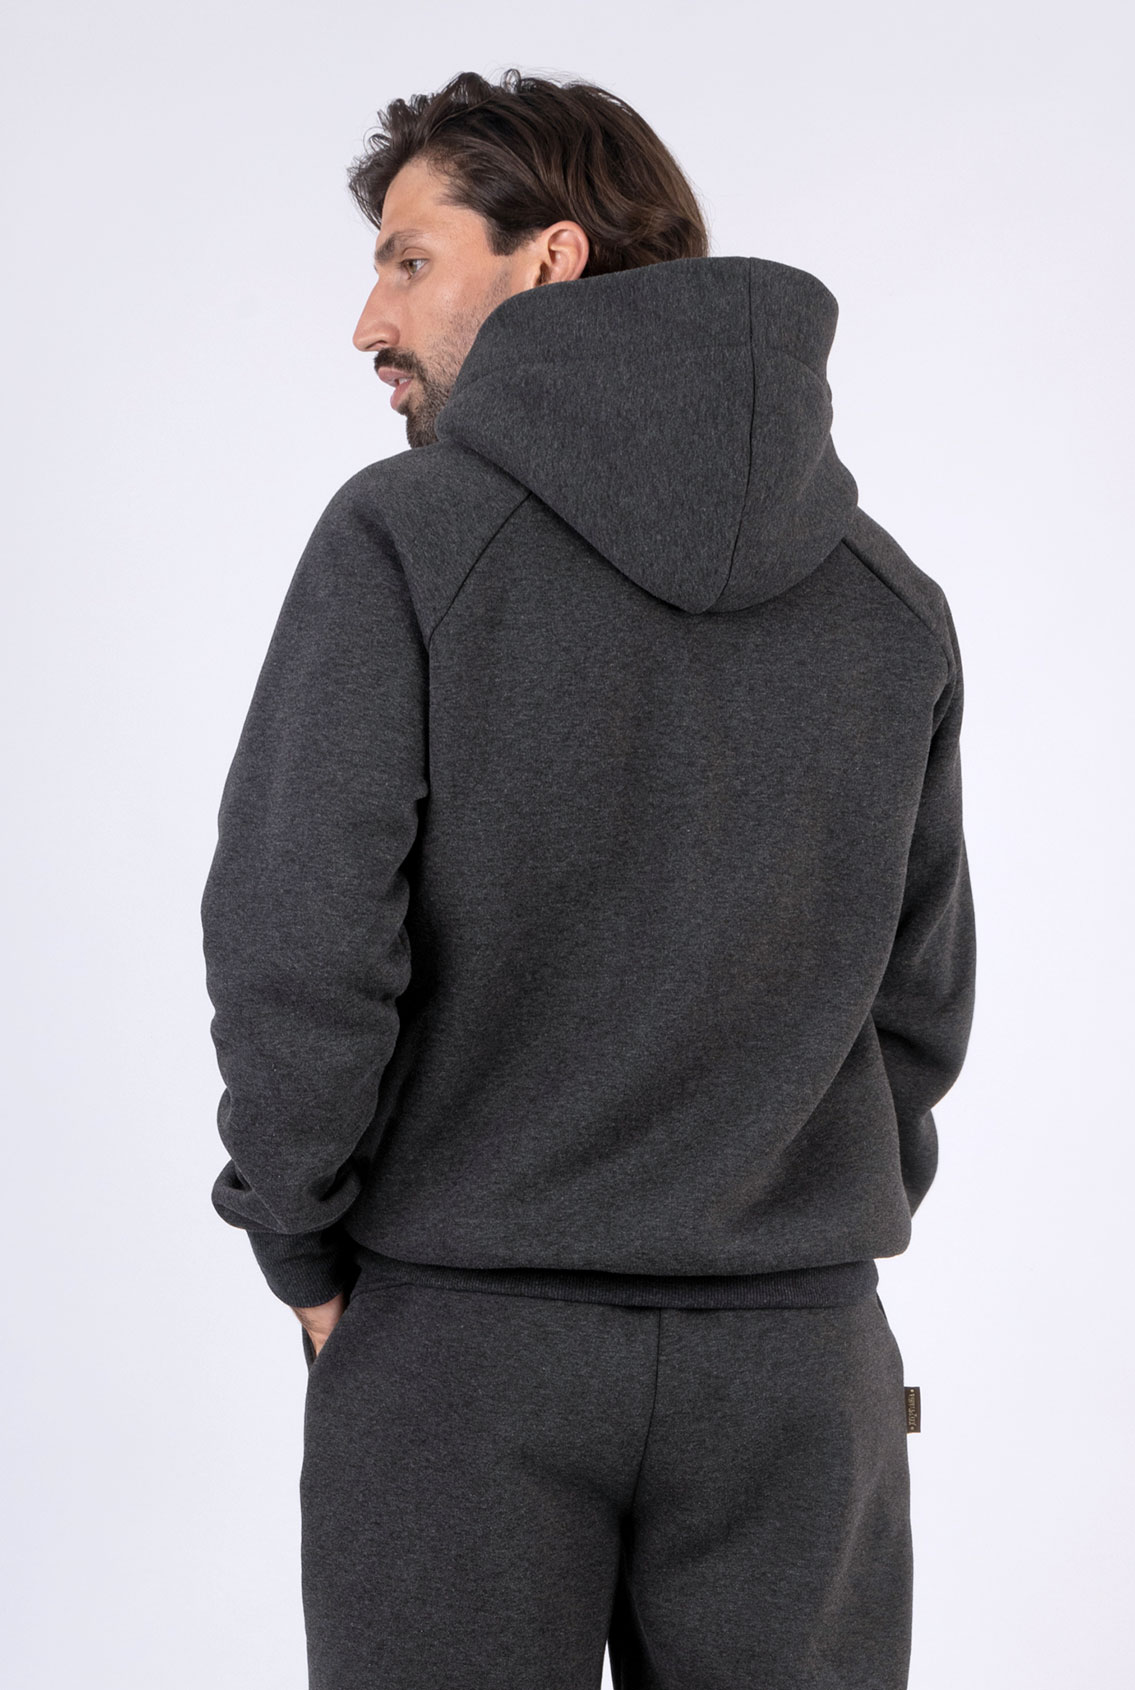 men's gray hoodie